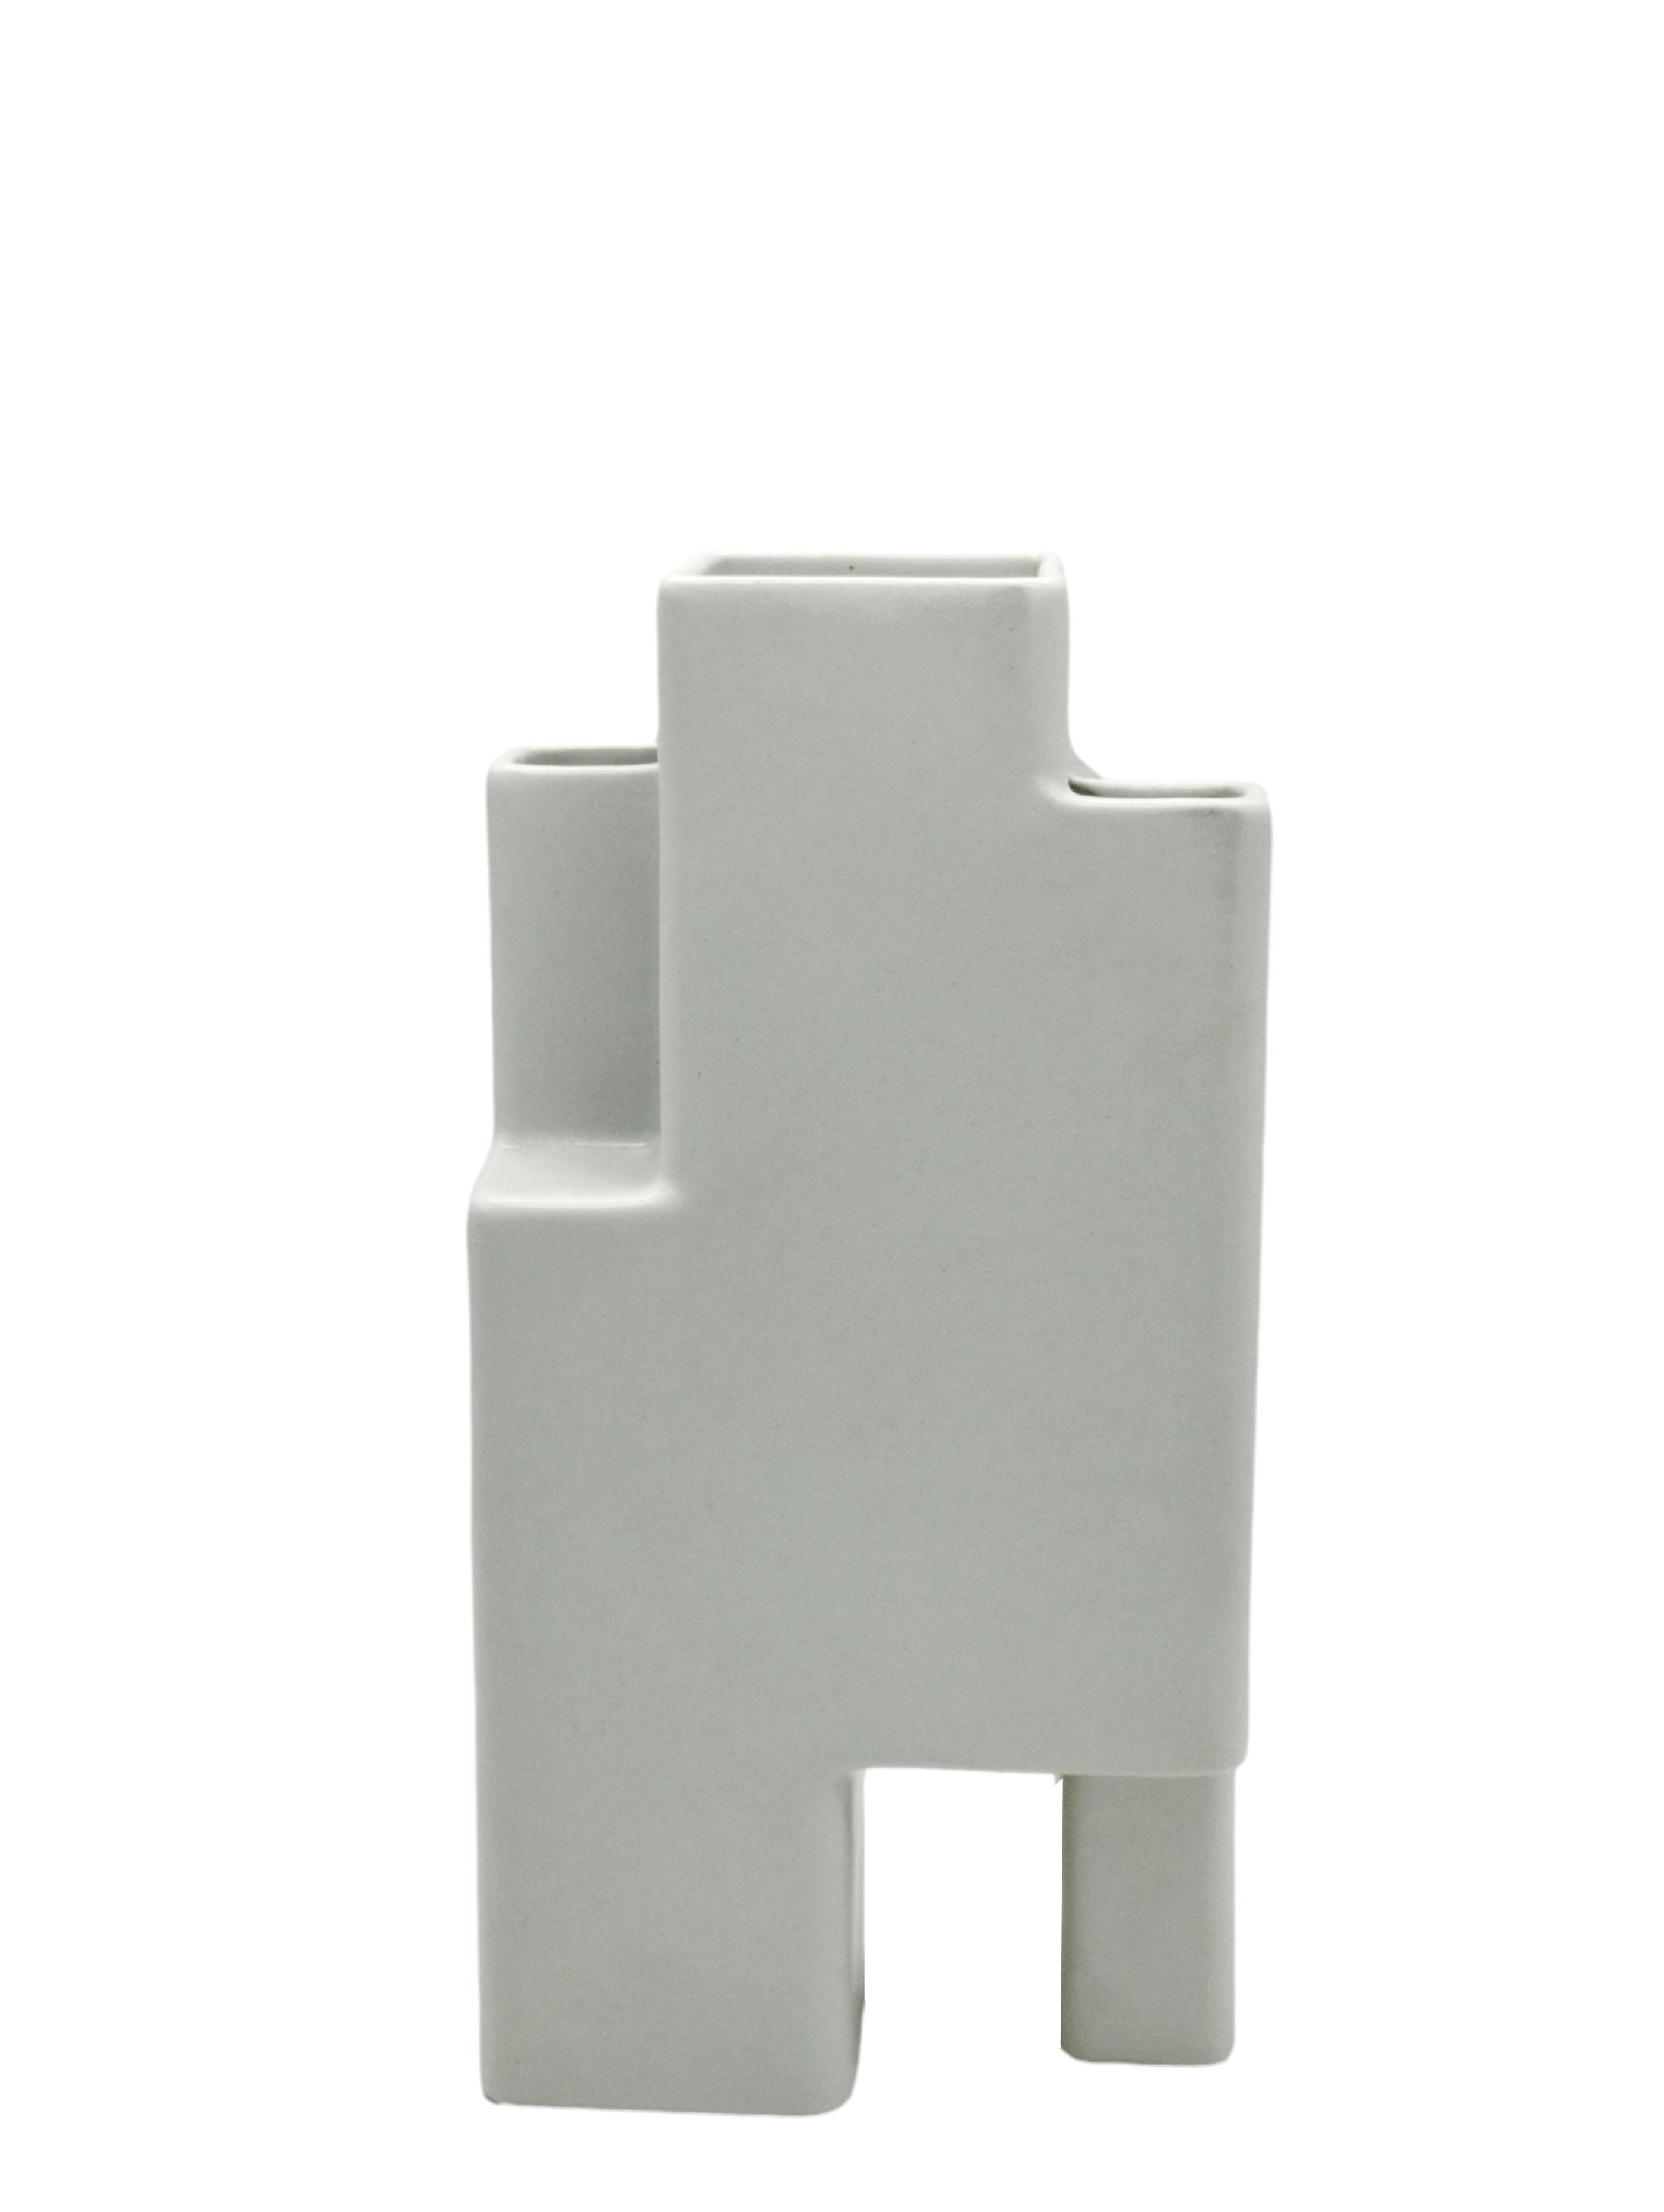 Pierre Cardin für Franco Pozzi zugeschrieben. Geometrische Keramikvase in Weiß, Italien, 1970er Jahre (Moderne der Mitte des Jahrhunderts) im Angebot